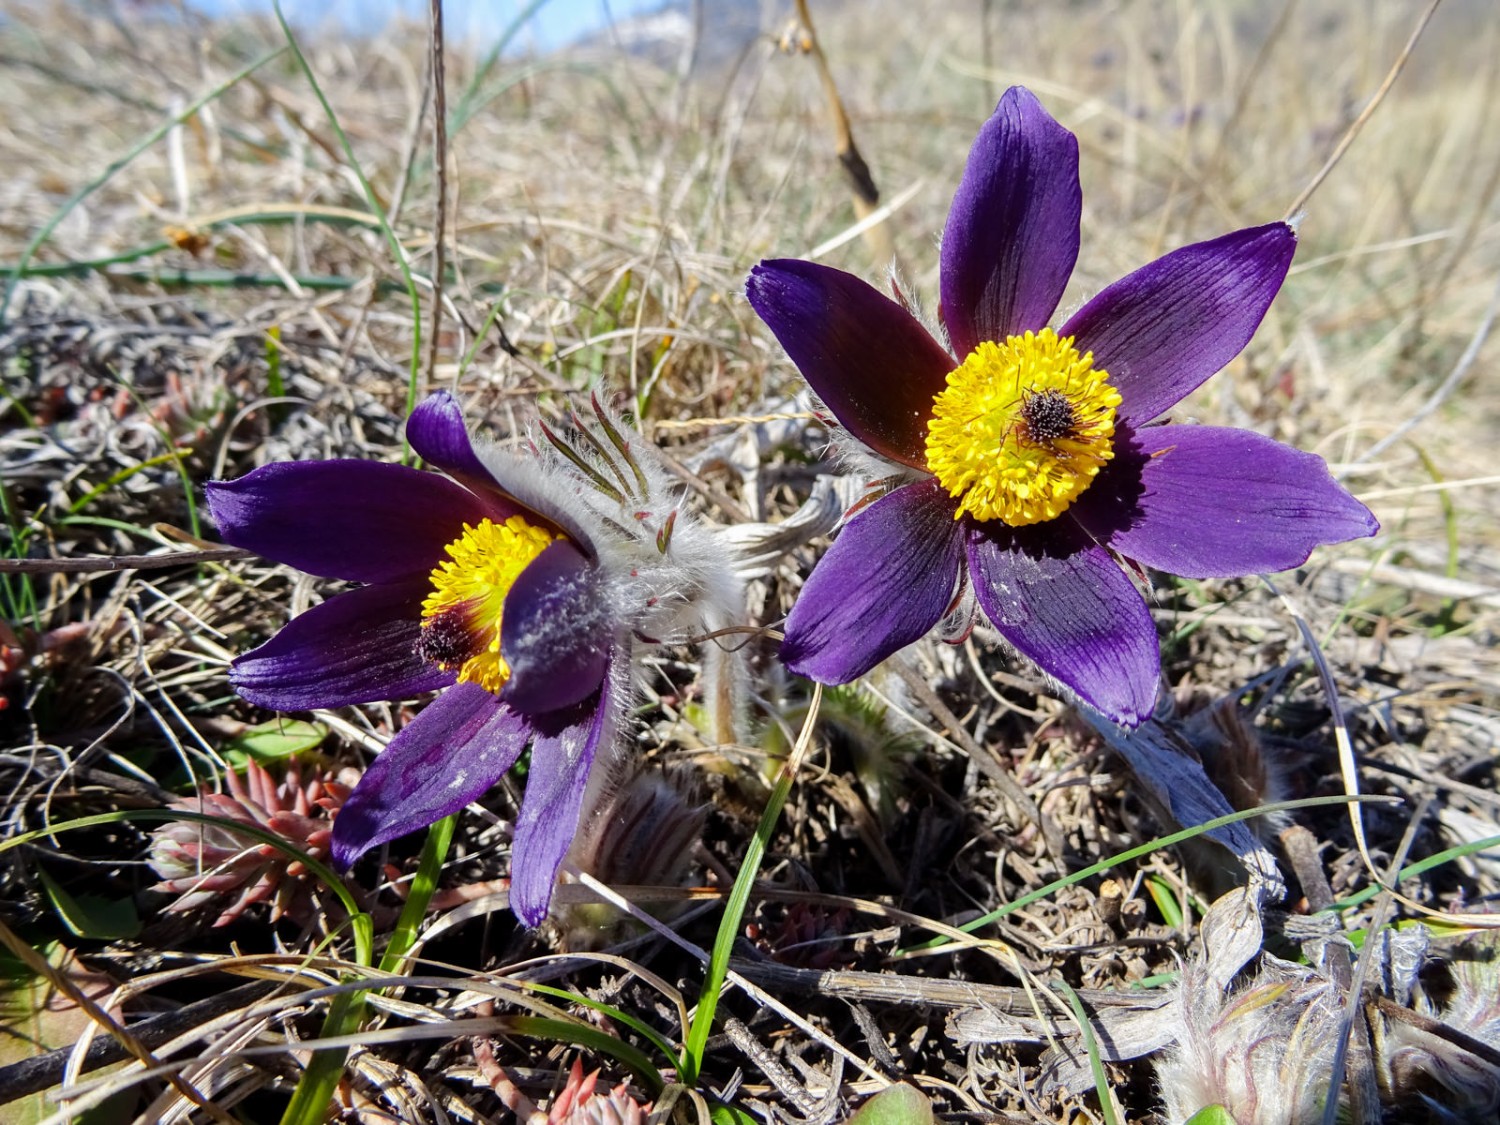 La jolie Pulsatille des montagnes (Pulsatilla montana) fleurit au printemps sur les versants arides. Photo: Sabine Joss